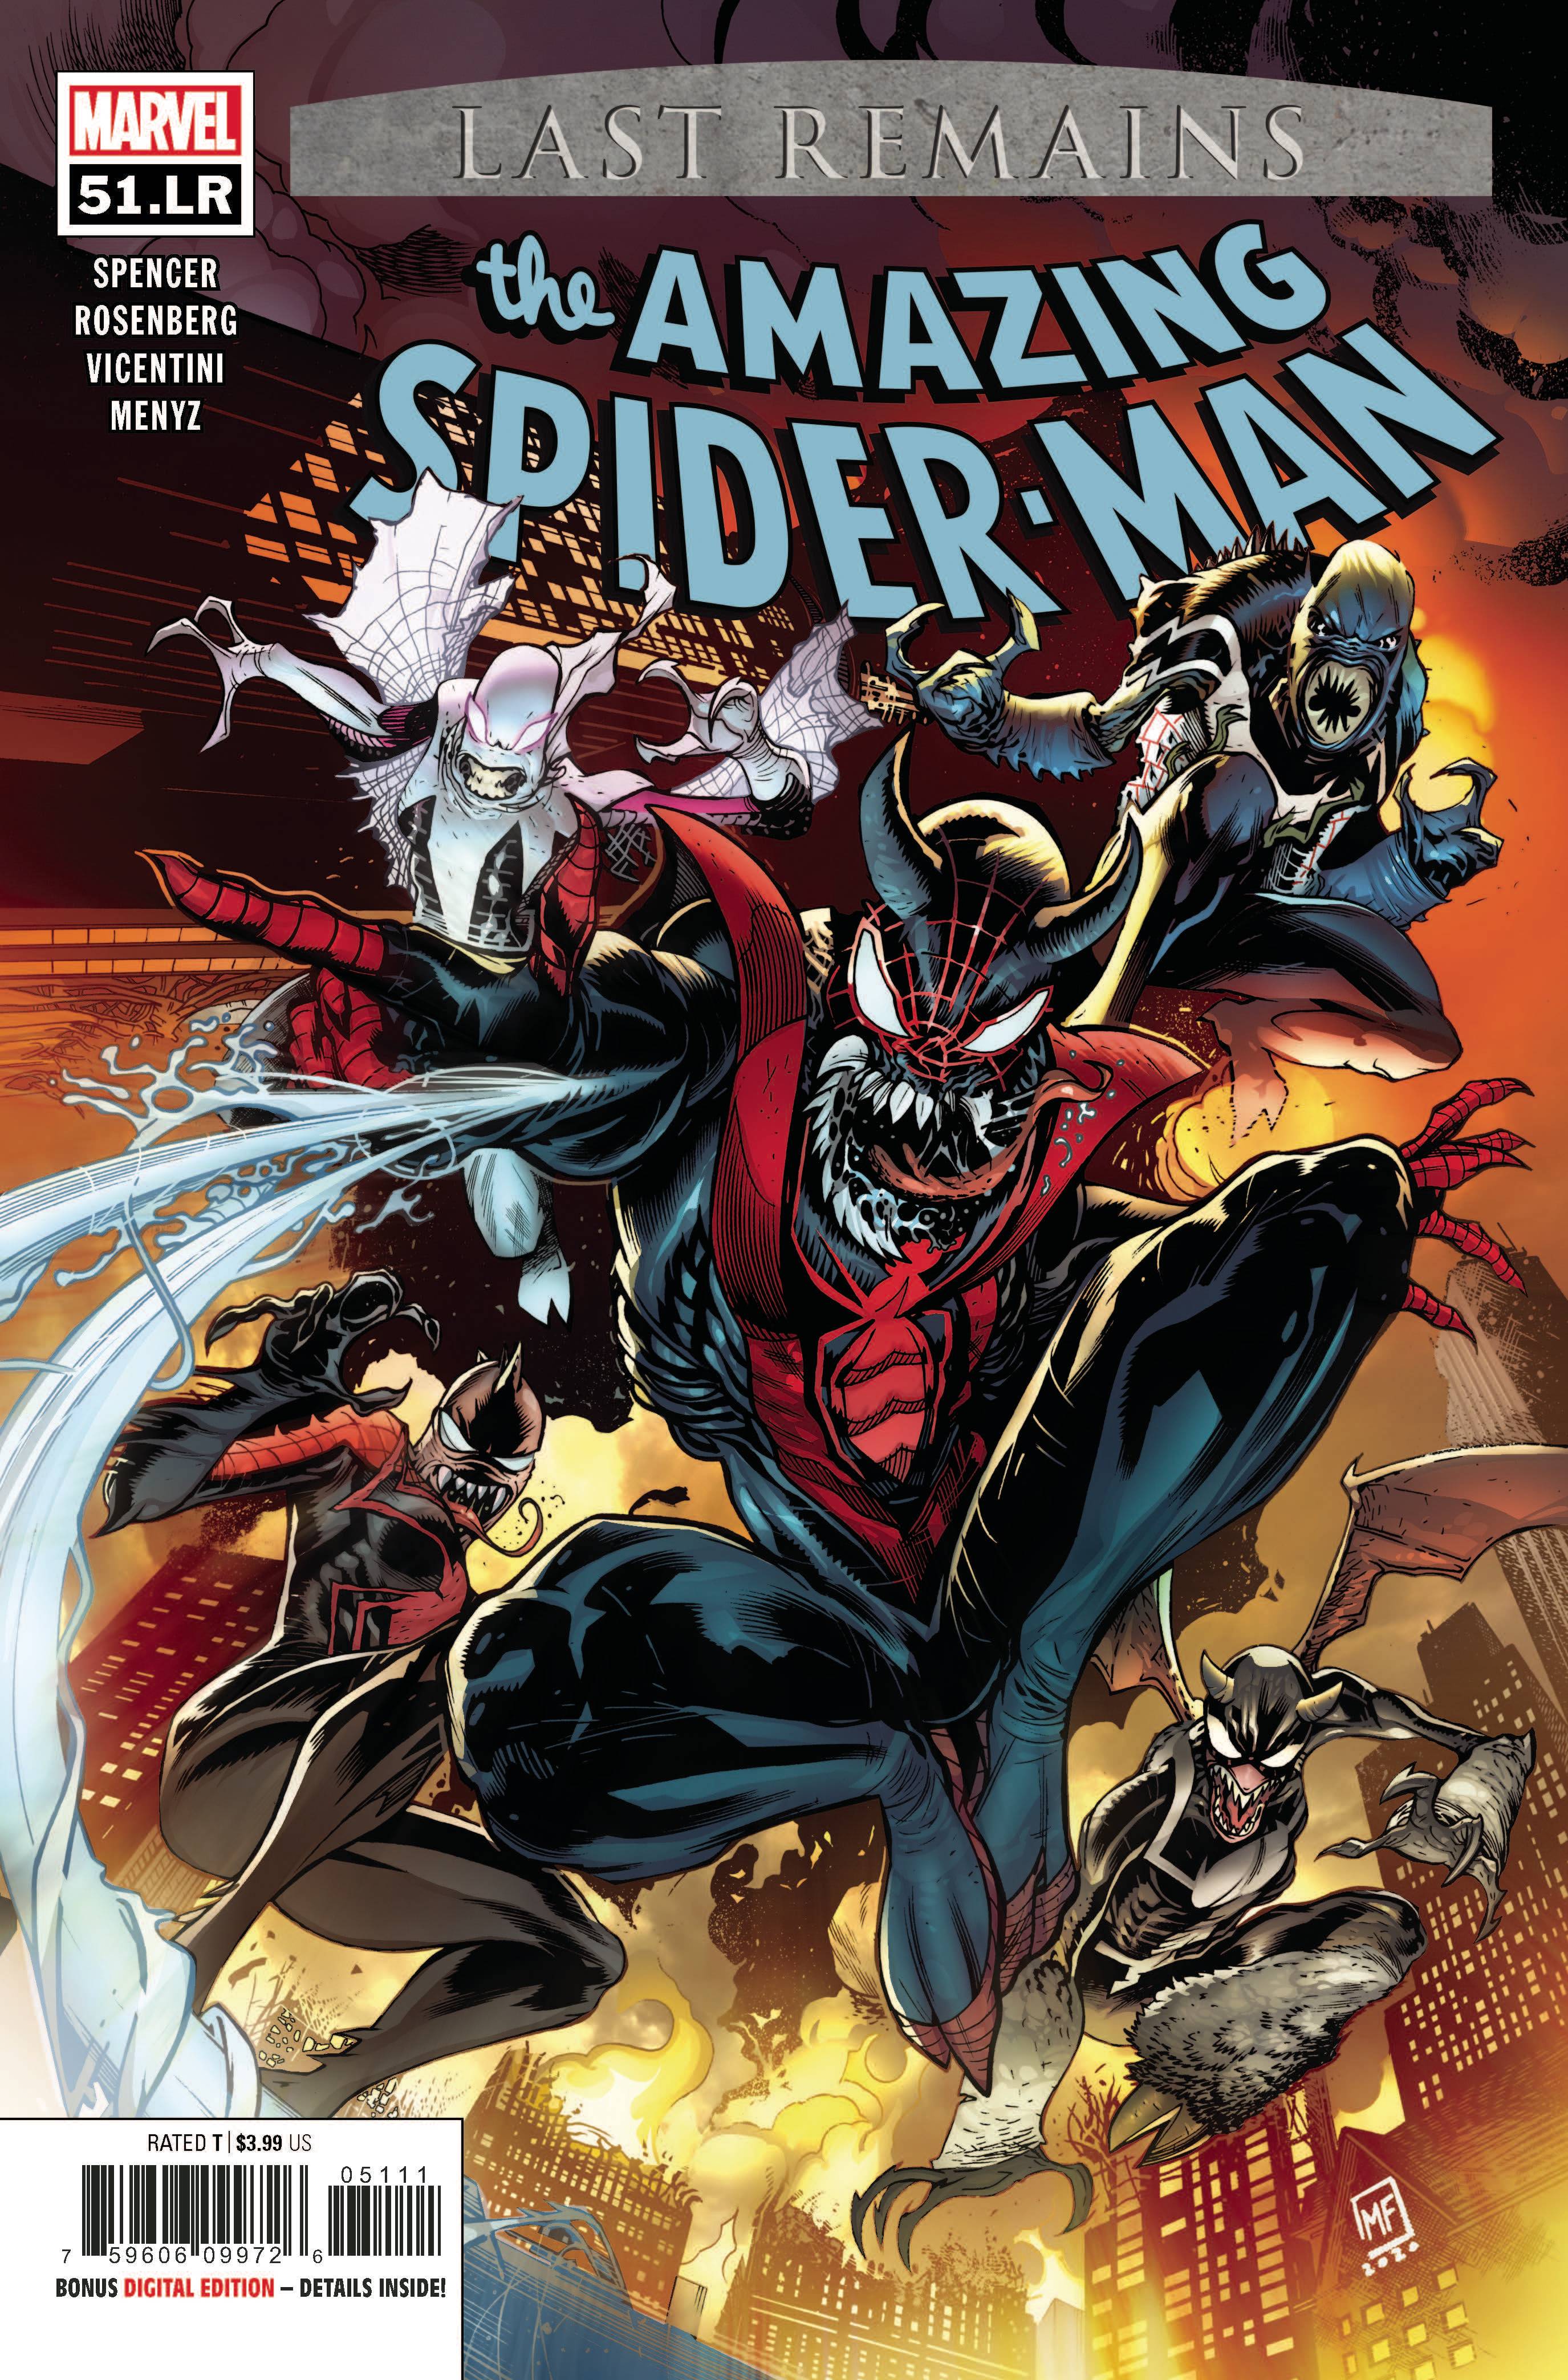 AMAZING SPIDER-MAN #51.LR | Game Master's Emporium (The New GME)